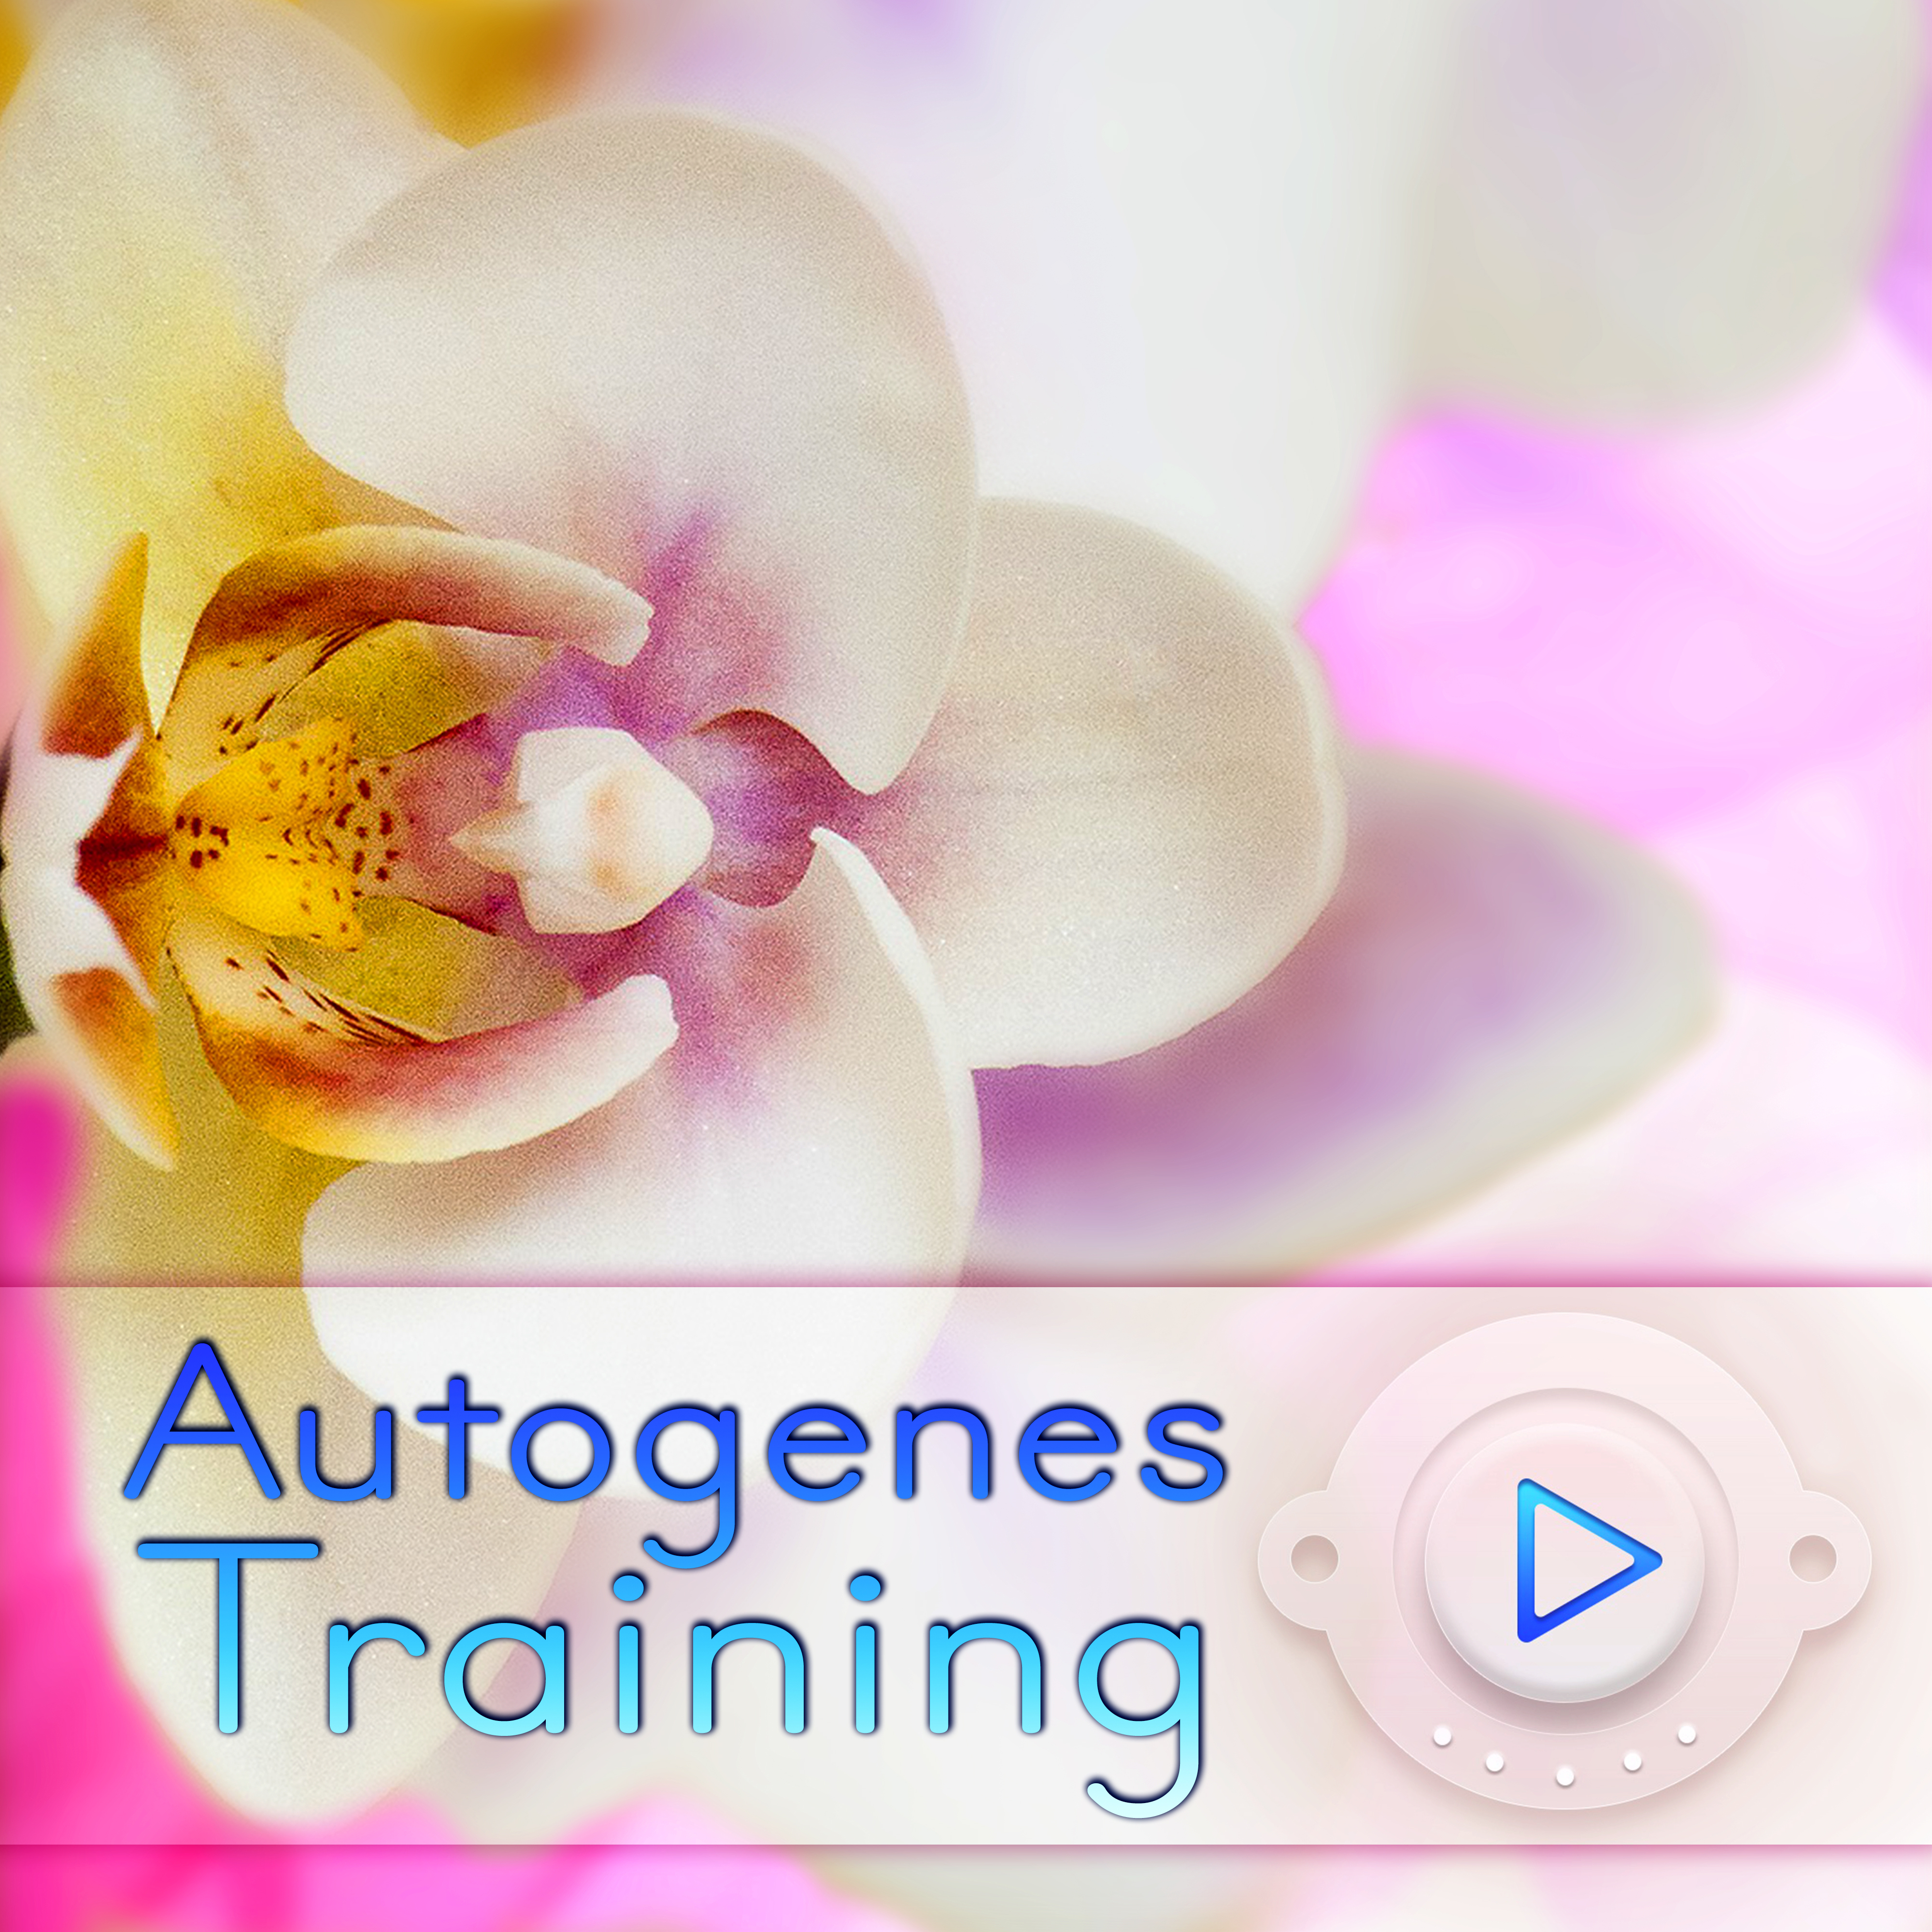 Autogenes Training - Musik zum Ausklang, Naturgeräusche, Entspannungsmusik, Nachhaltige Entspannung und Gesunder Schlaf, Beruhigende Musik, Musiktherapie